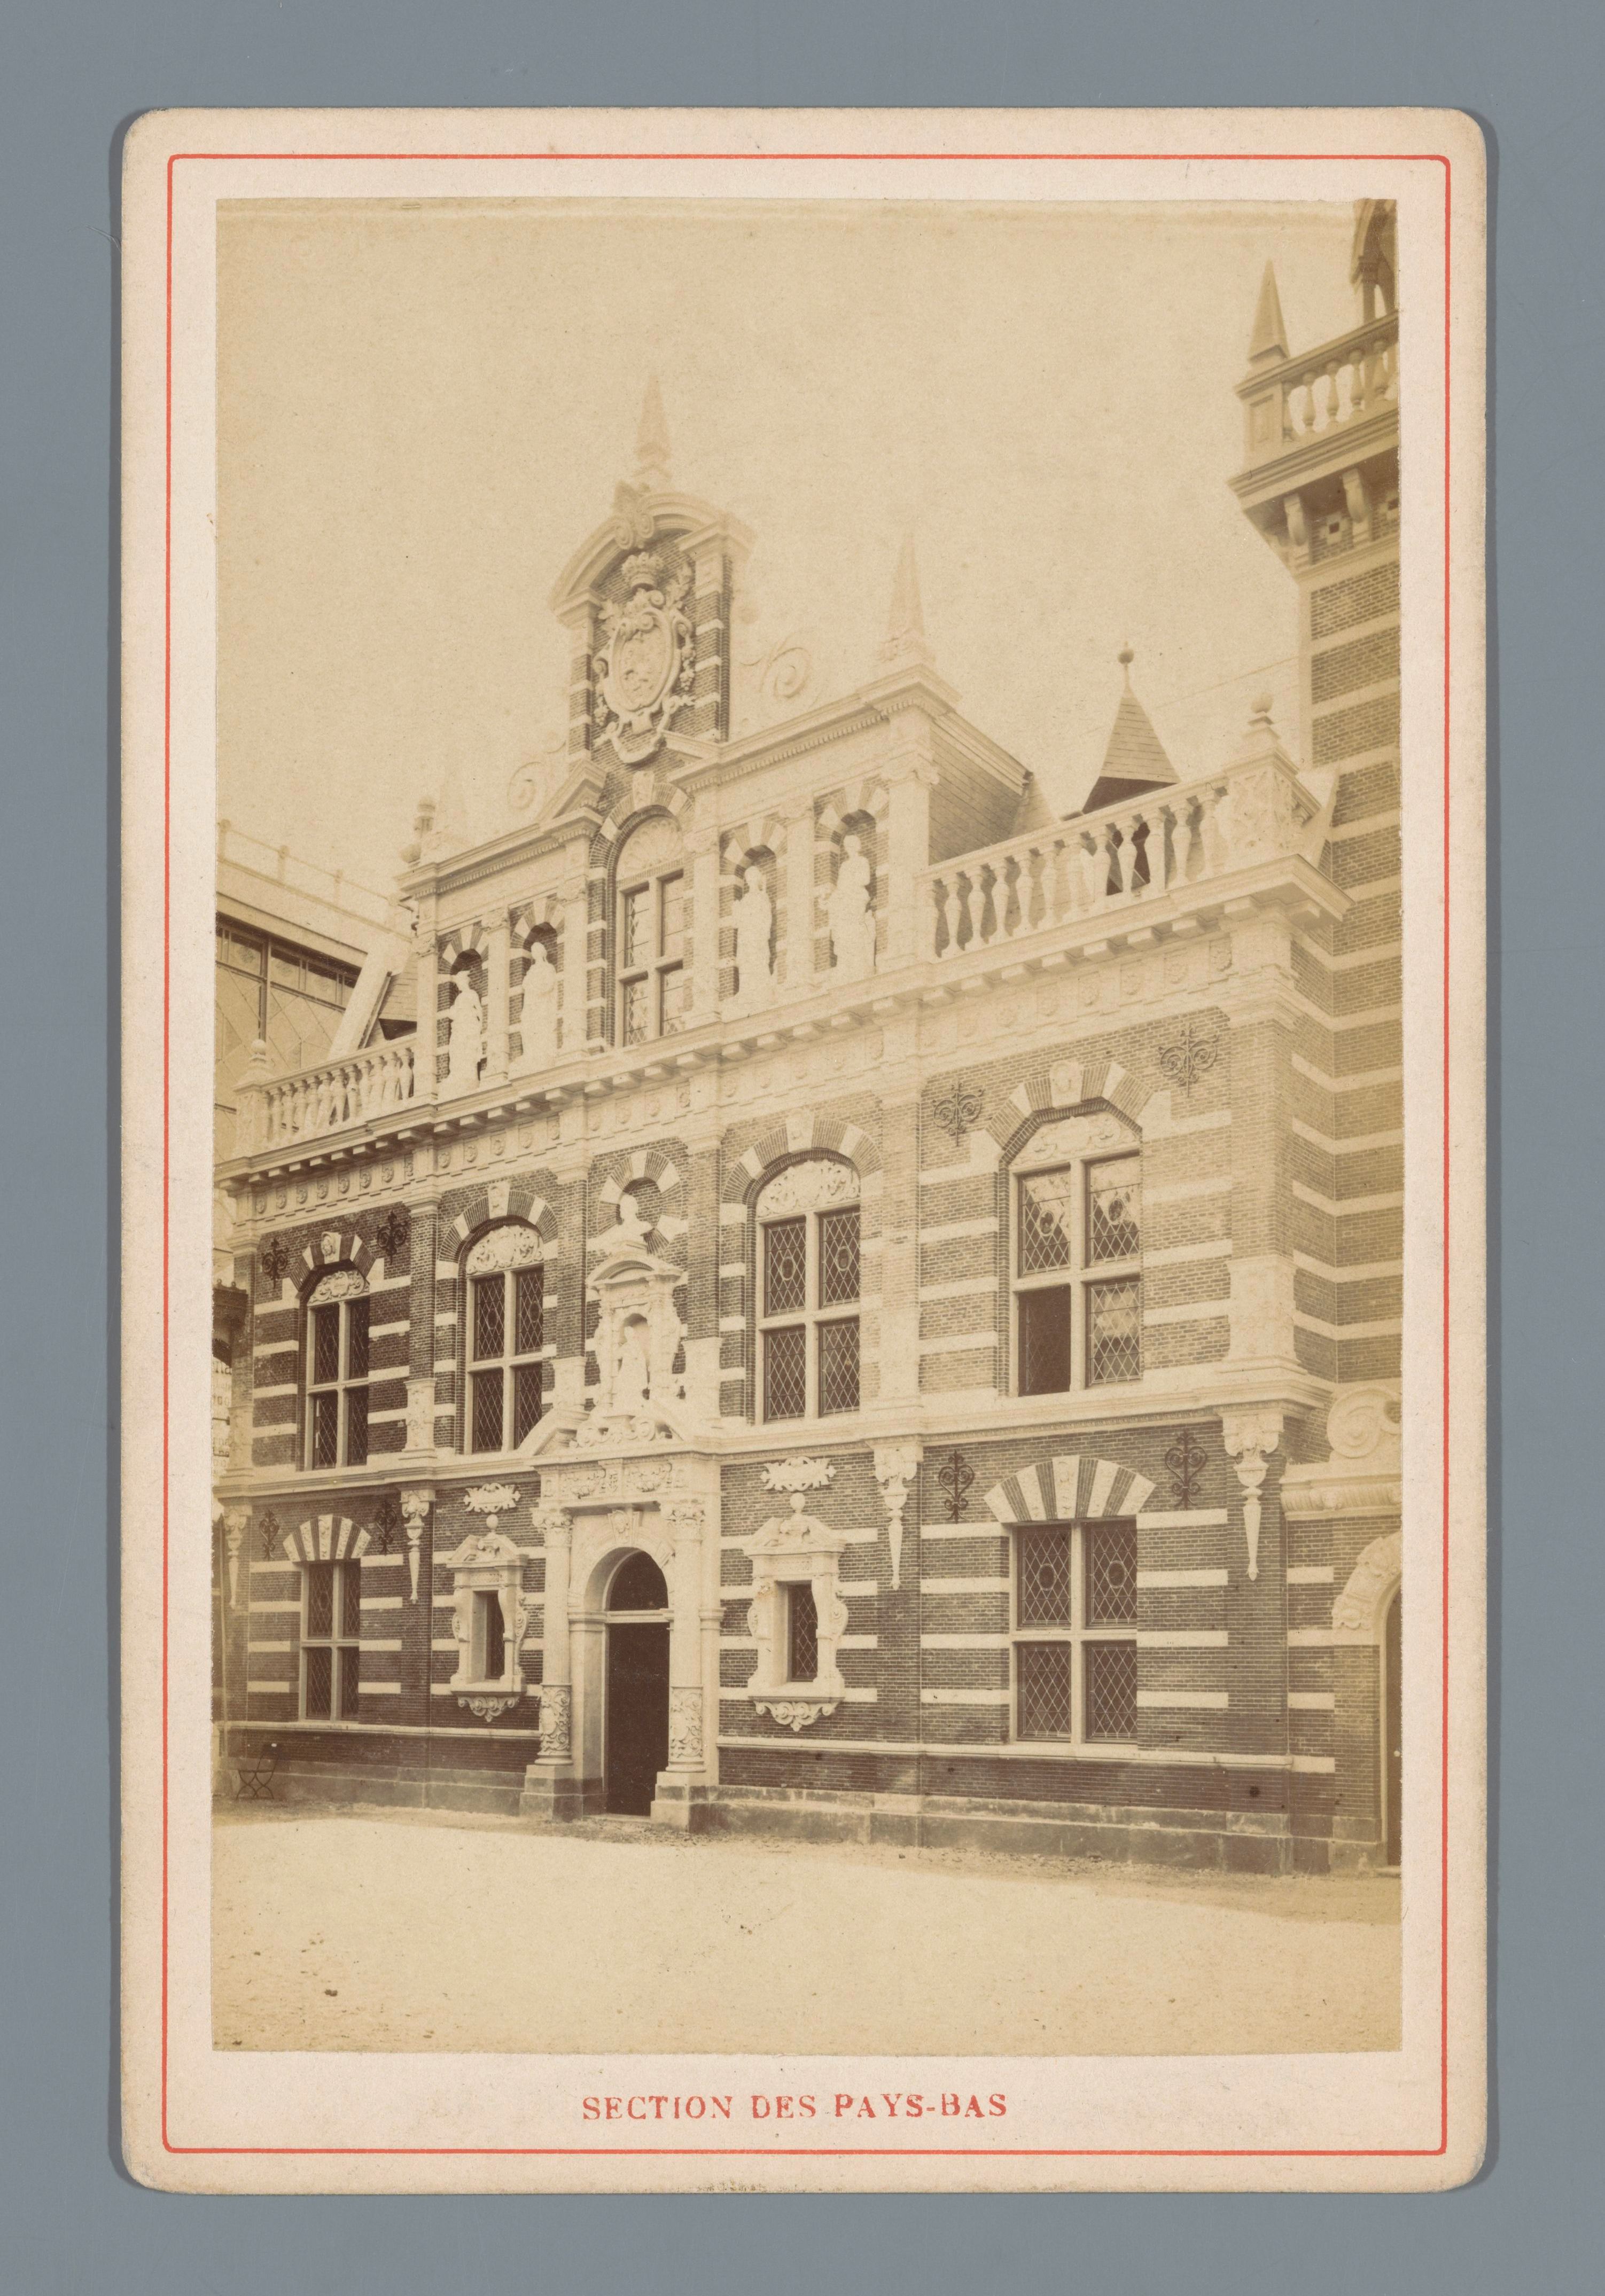 File:Nederlandse paviljoen op de Wereldtentoonstelling te Parijs in 1878 Section des Pays-Bas (titel op object), RP-F-F19705.jpg - Wikimedia